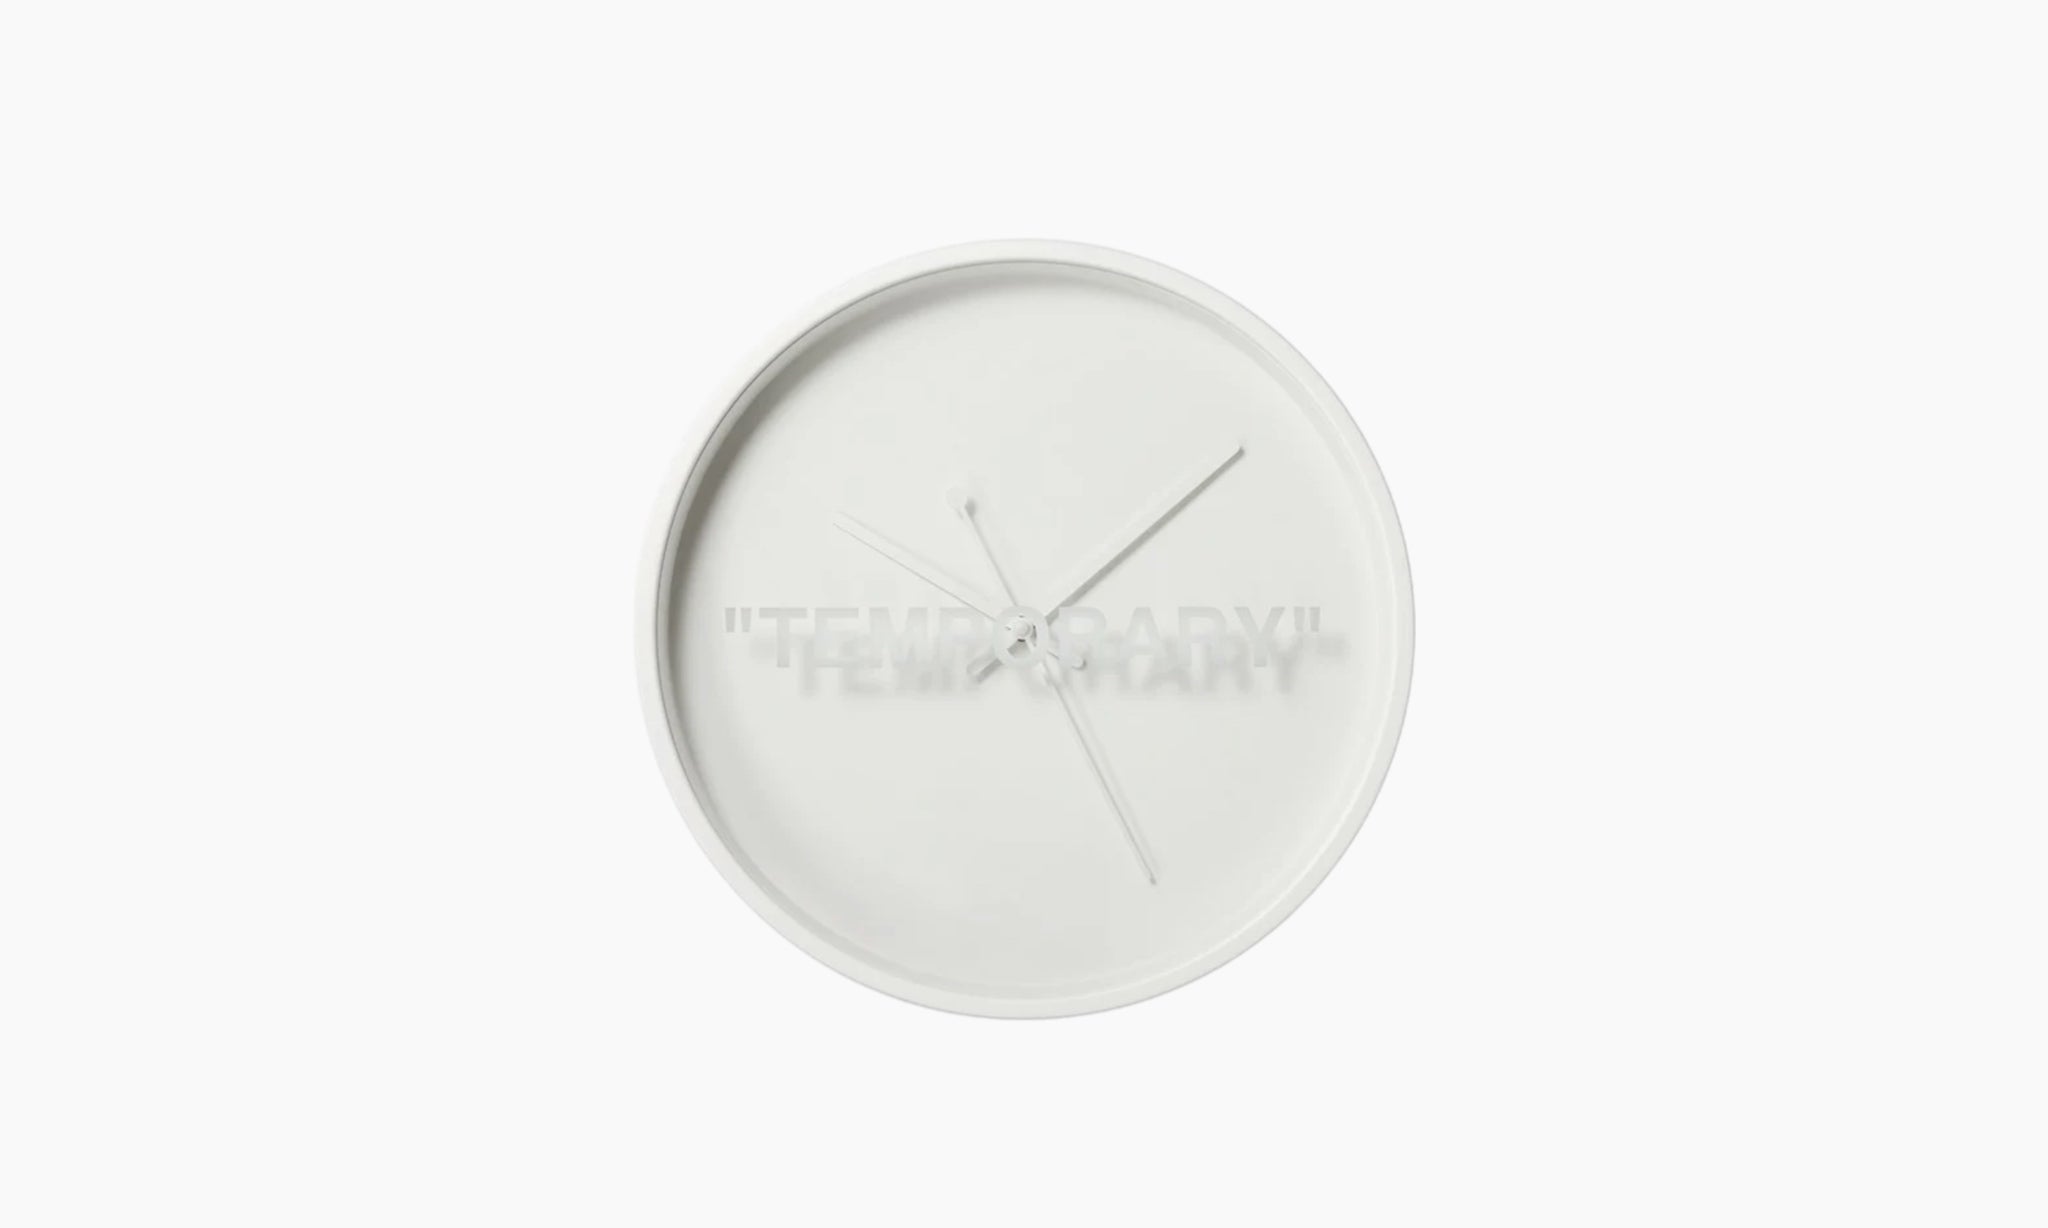 Virgil Abloh x IKEA MARKERAD TEMPORARY Wall Clock White - US